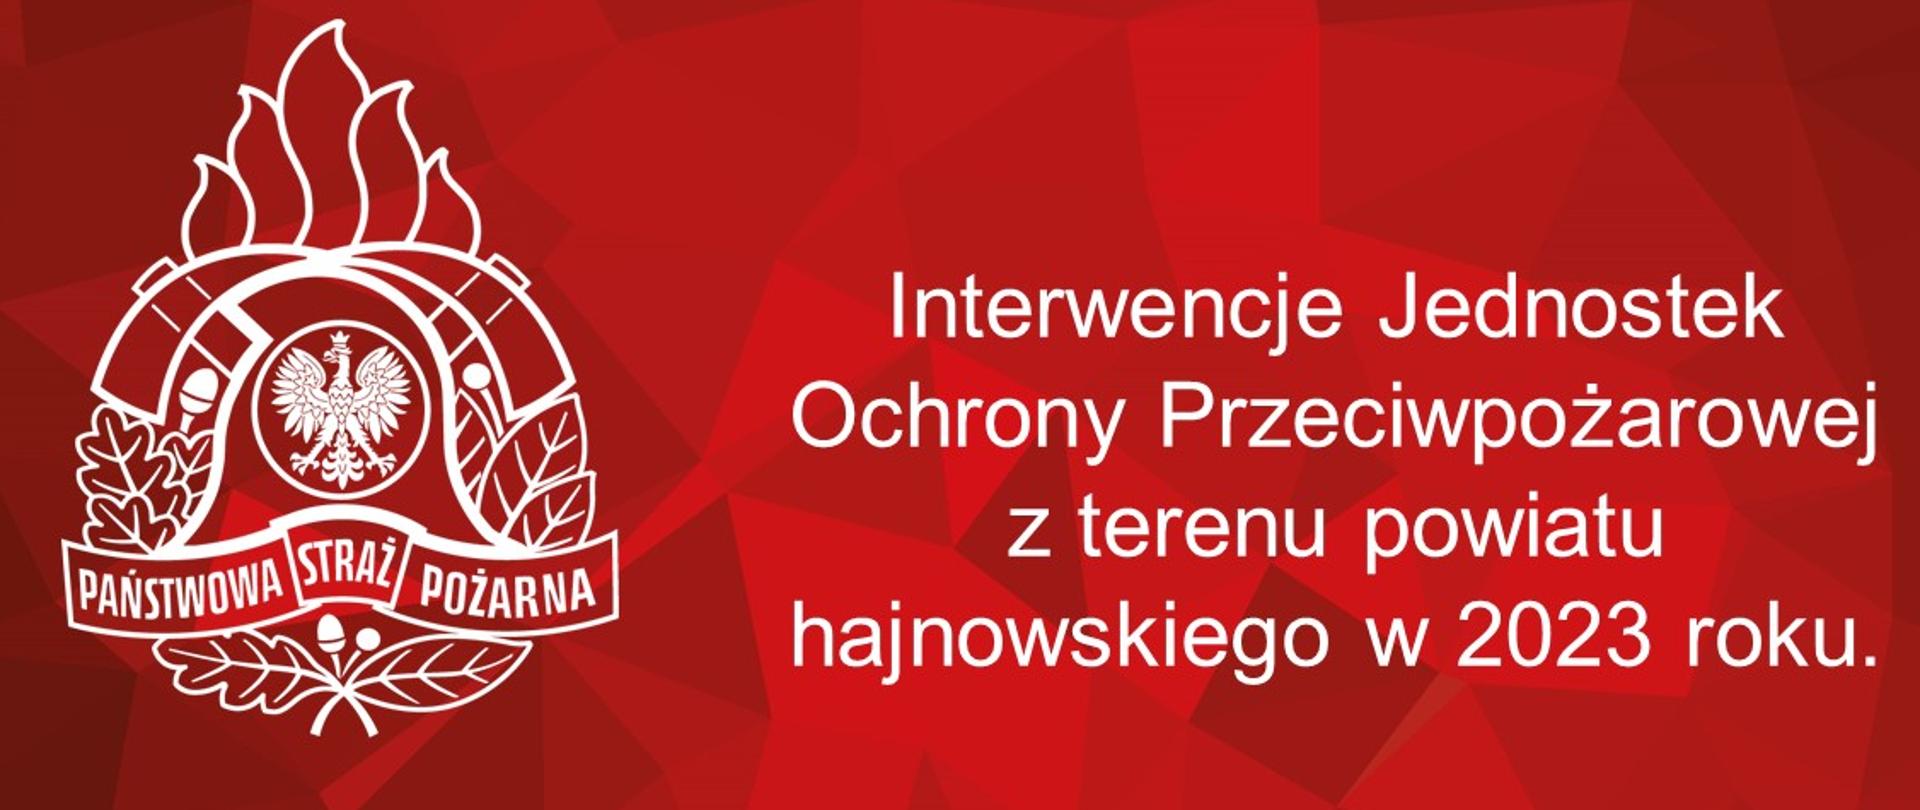 Interwencje Jednostek Ochrony Przeciwpożarowej z terenu powiatu hajnowskiego w 2023 roku